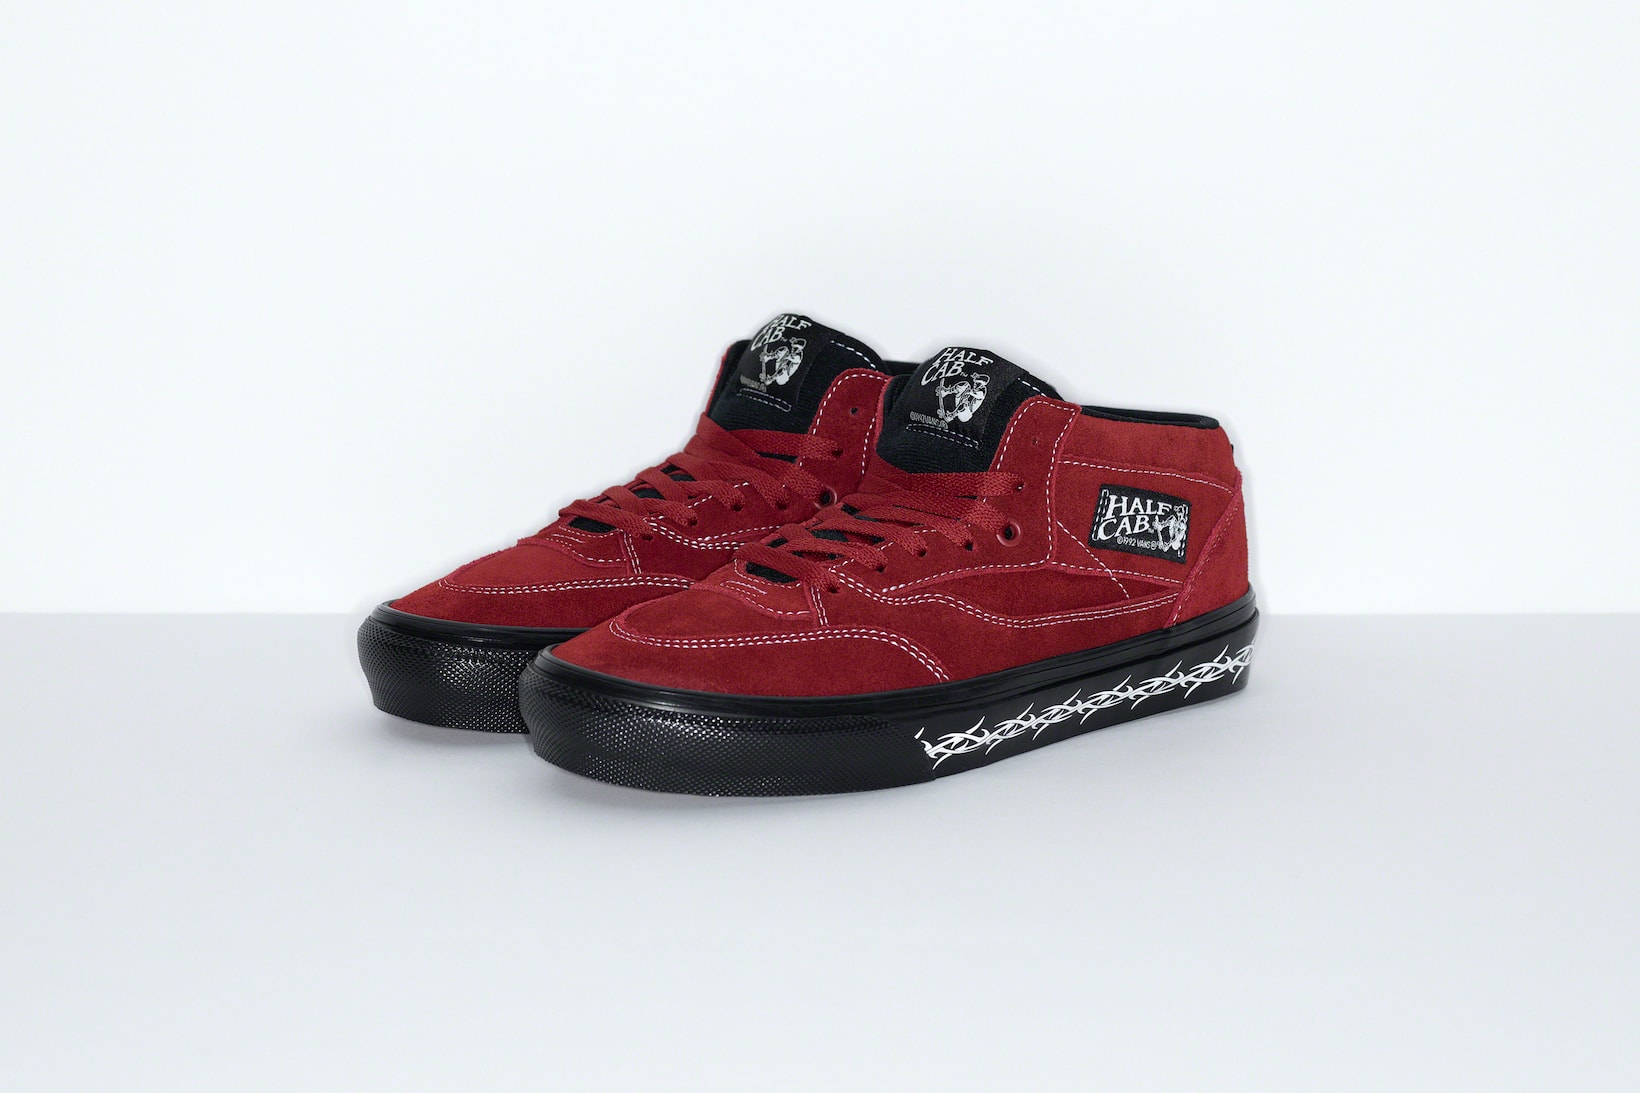 Supreme Vans Half Cab Old Skool Collaboration Sneakers Footwear Kicks Shoes